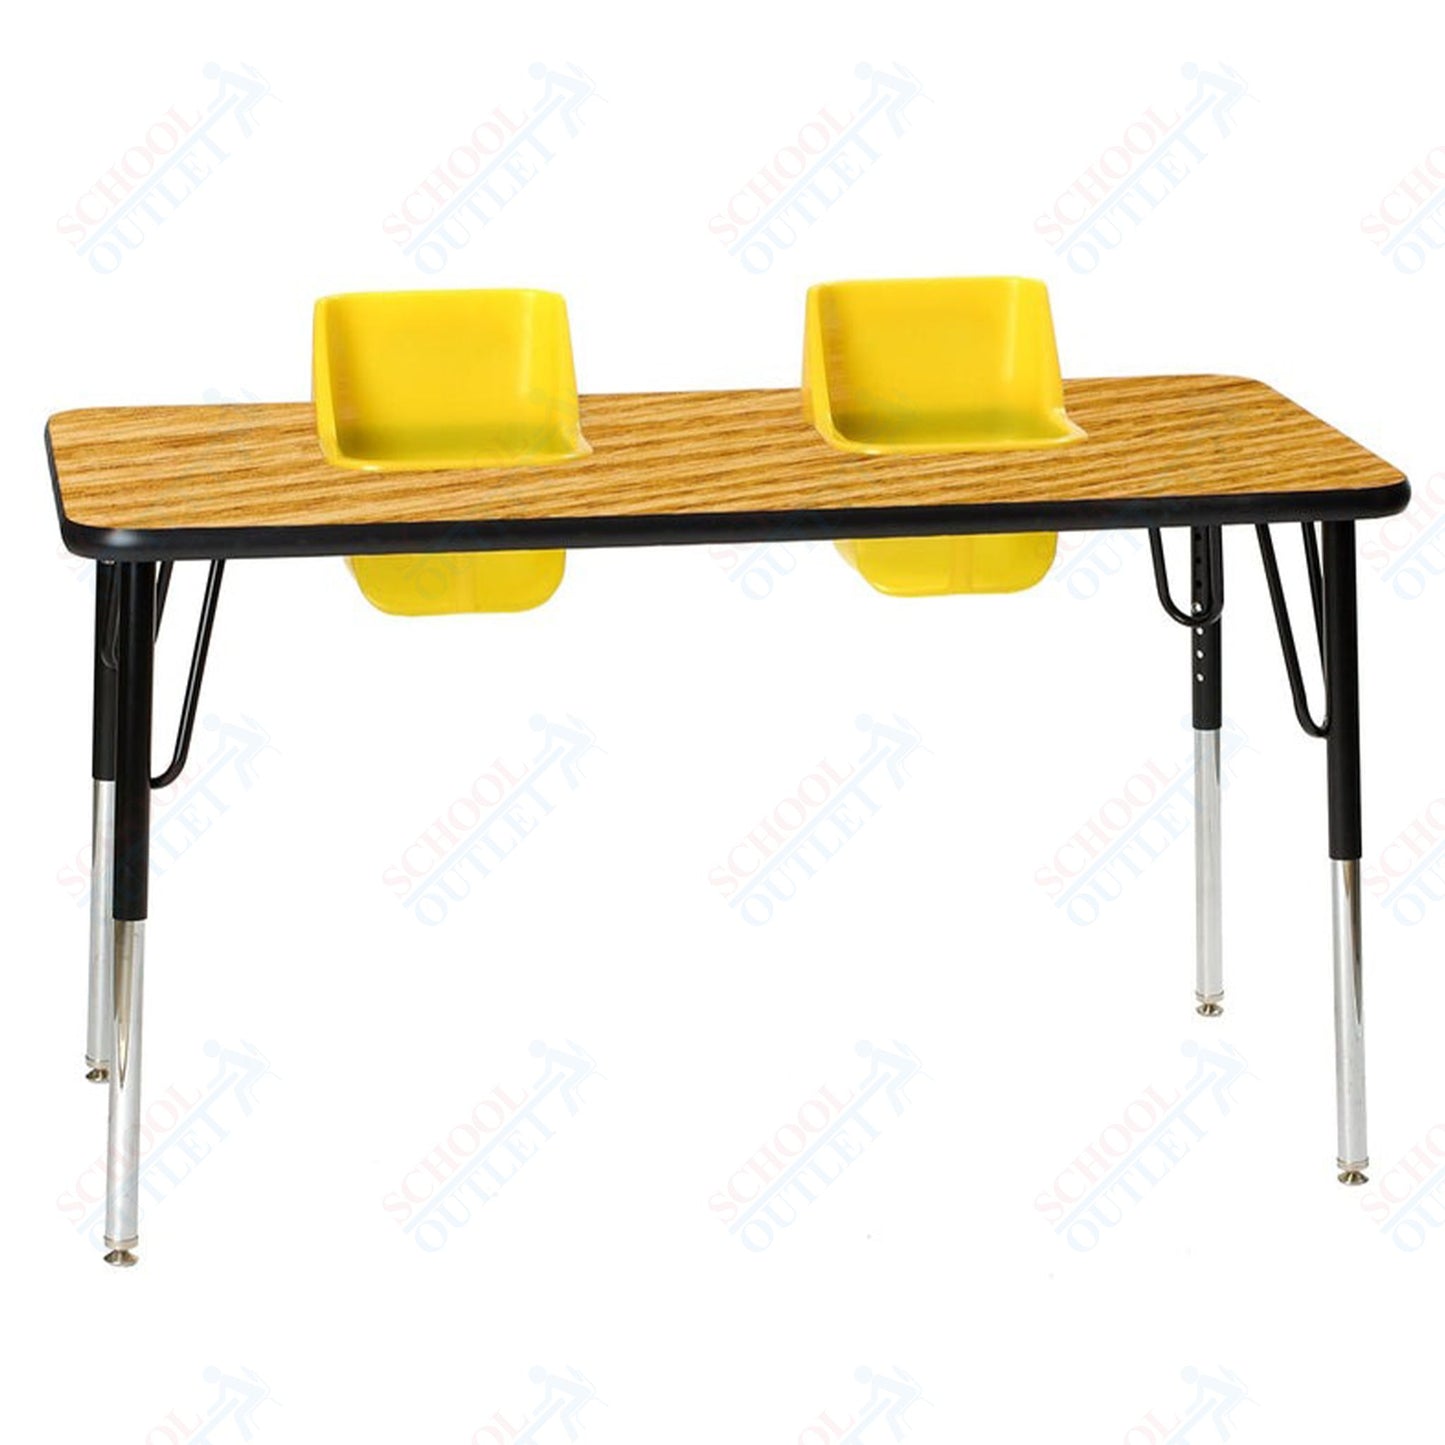 Two-Seat Rectangular Toddler Table (Toddler Tables TOD-TT2)